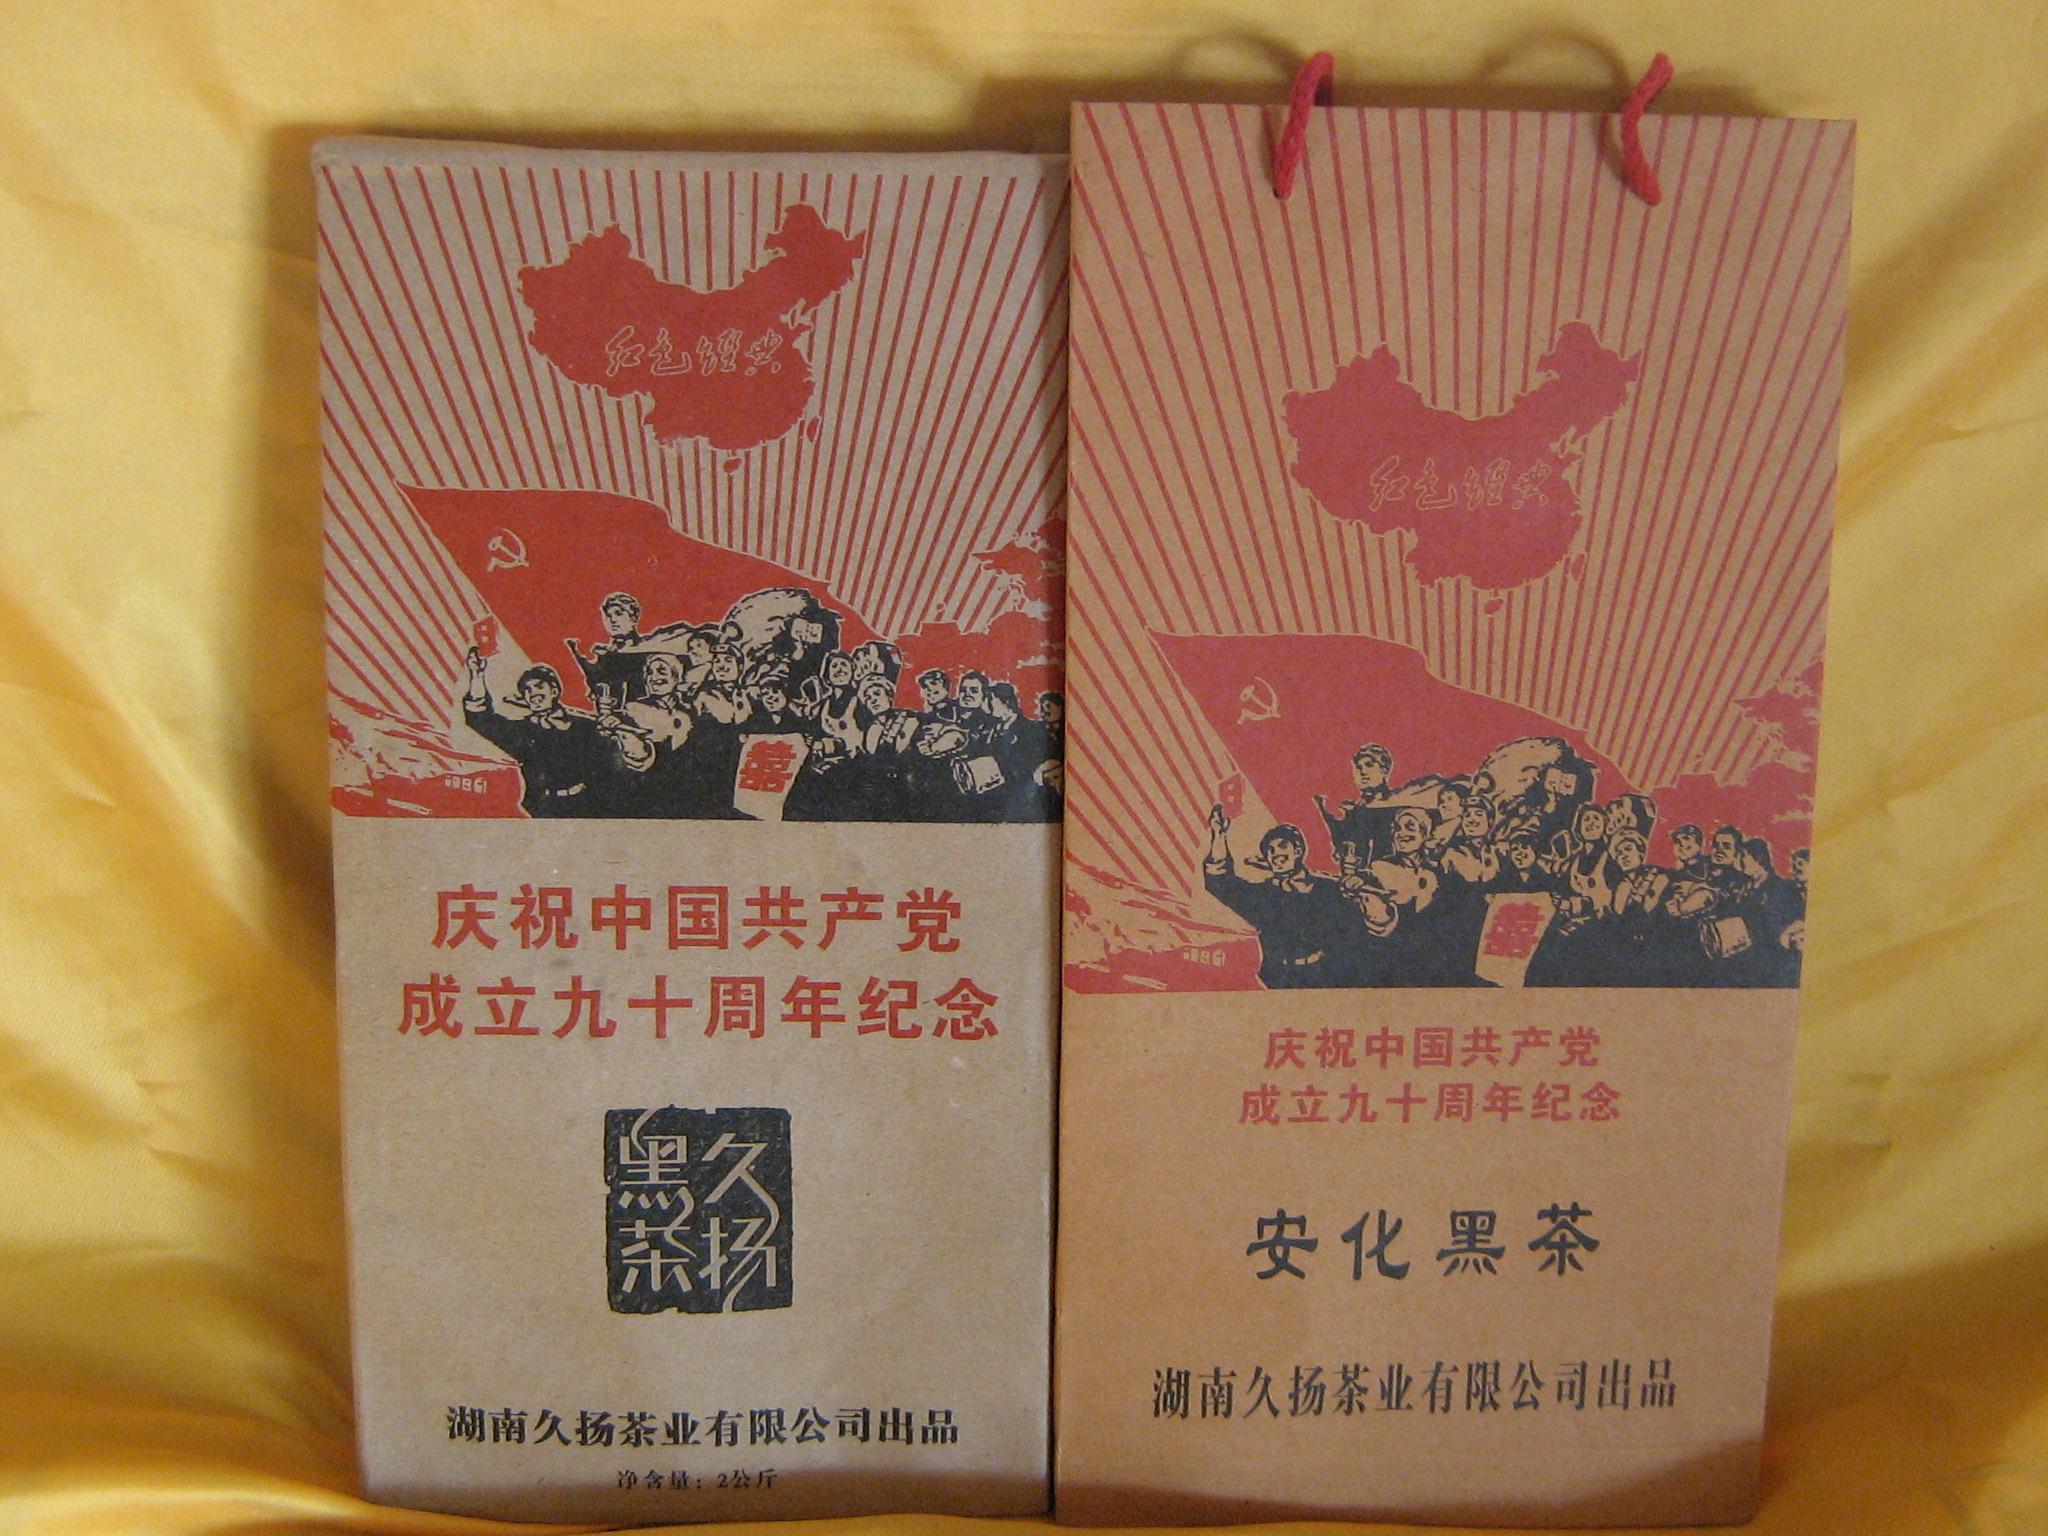 红色经典建党90周年纪念黑砖茶2kg(久扬2011)